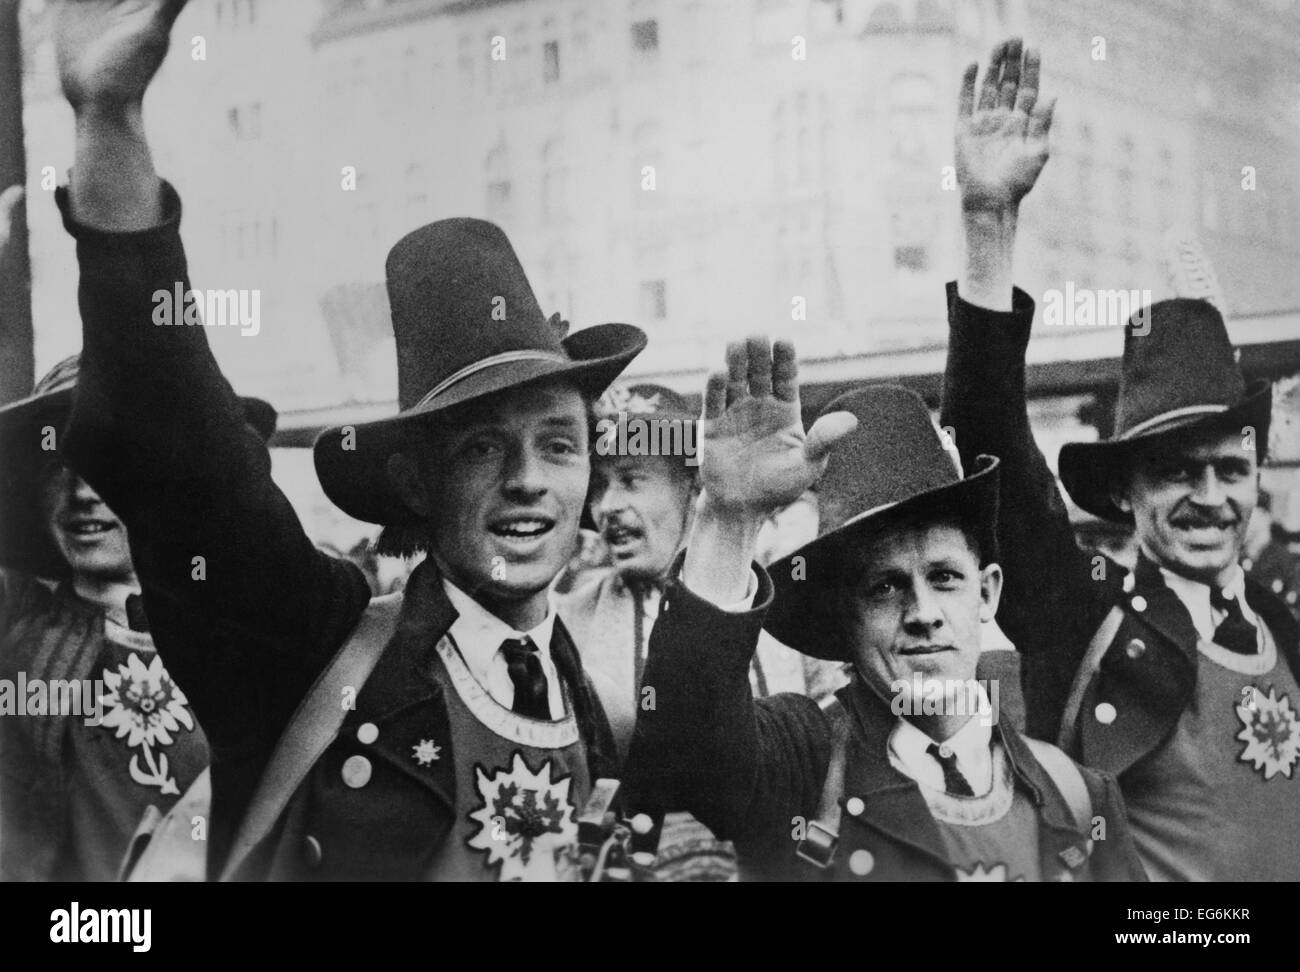 Gli uomini in costume tirolese festeggiare il tedesco l'annessione dell'Austria con un saluto nazista. L'ideologia nazista innocentemente integrato Foto Stock